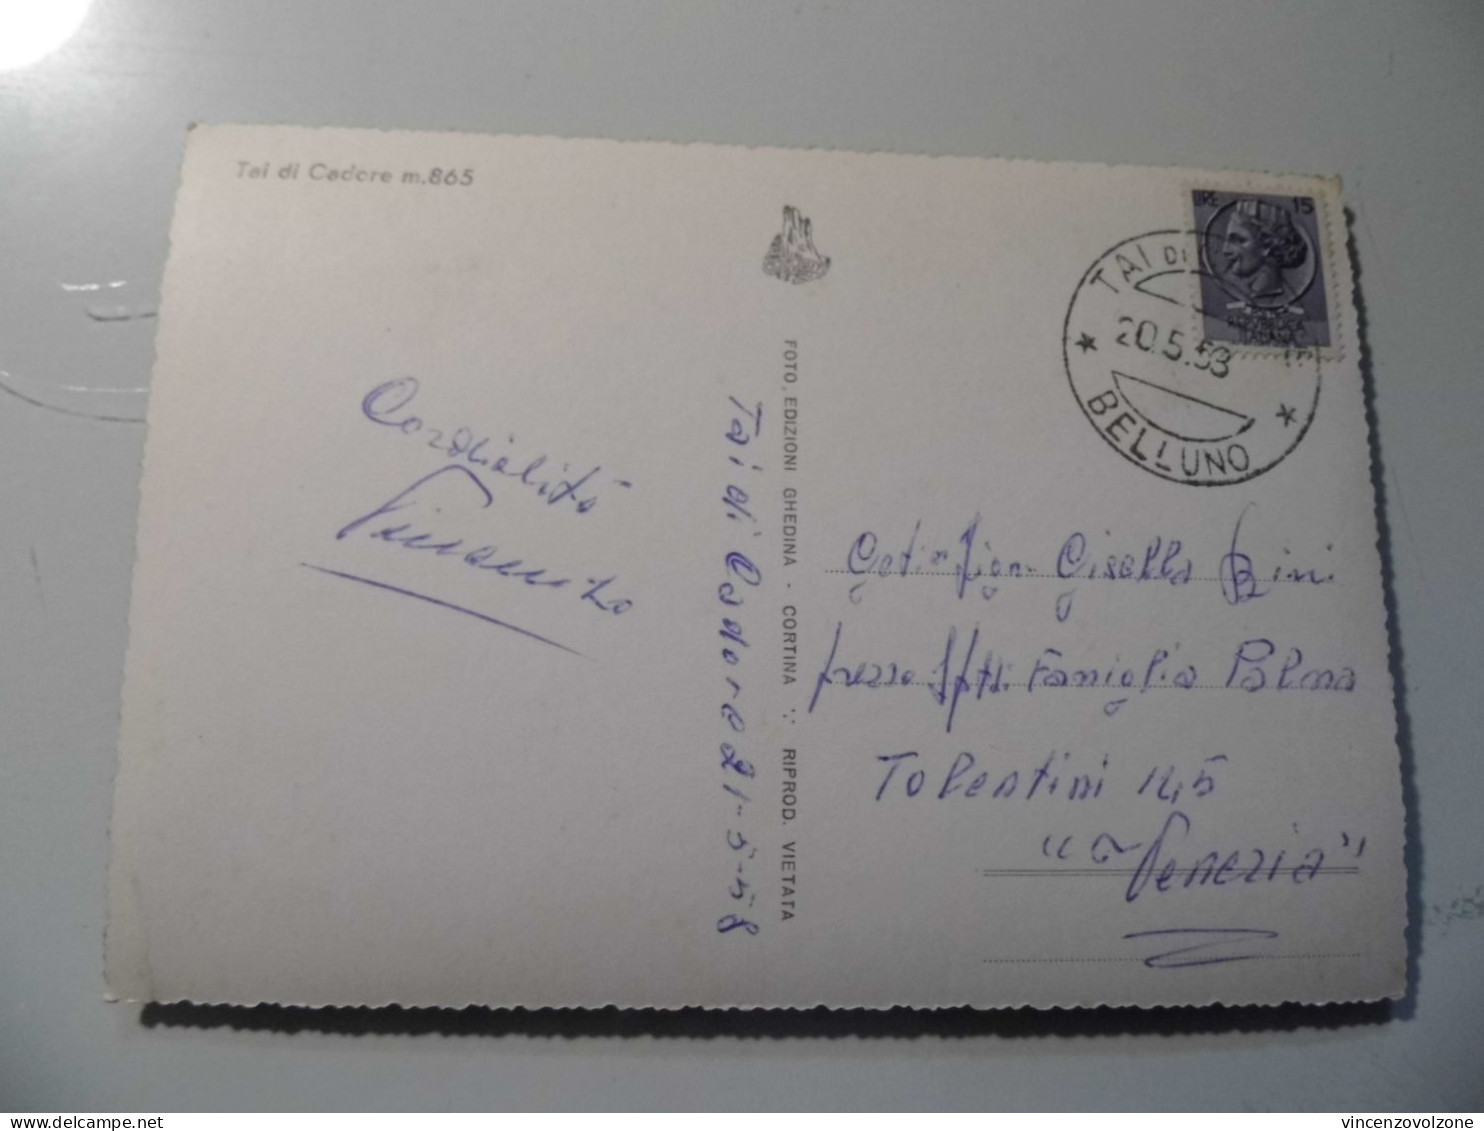 Cartolina Viaggiata "TAI DI CADORE" 1958 - Belluno